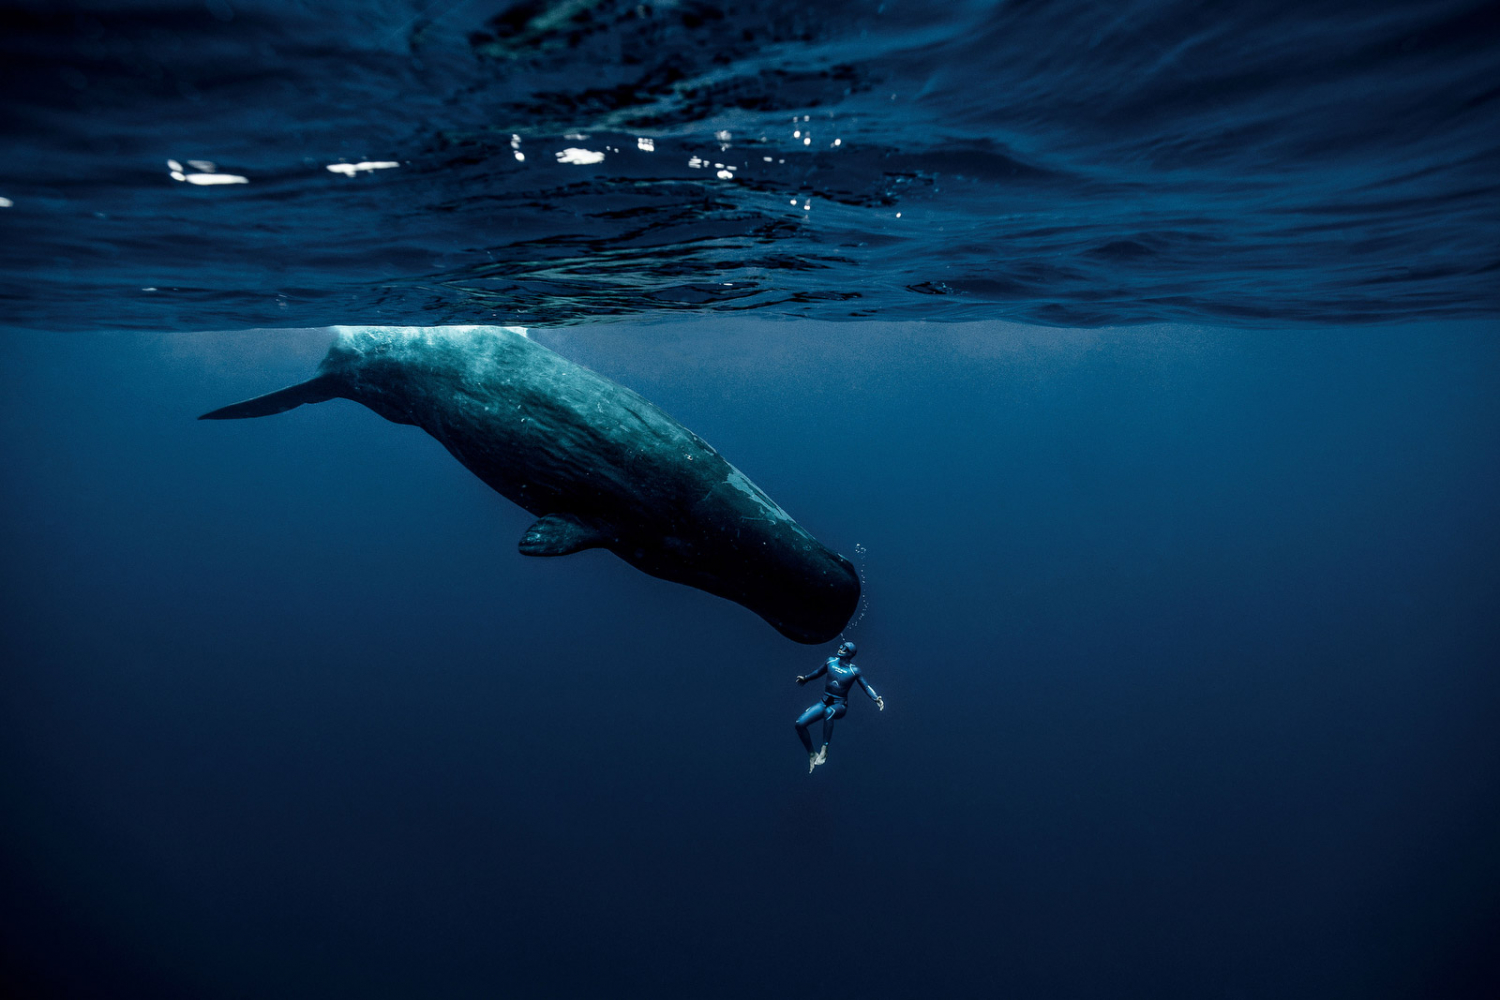 Nhiếp ảnh gia Seguin cho biết, khi trong lòng đại dương, con người trở nên rất nhỏ bé, thậm chí là bất lực trước thiên nhiên. Điều này đem lại cả cảm giác sợ hãi lẫn những niềm vui.